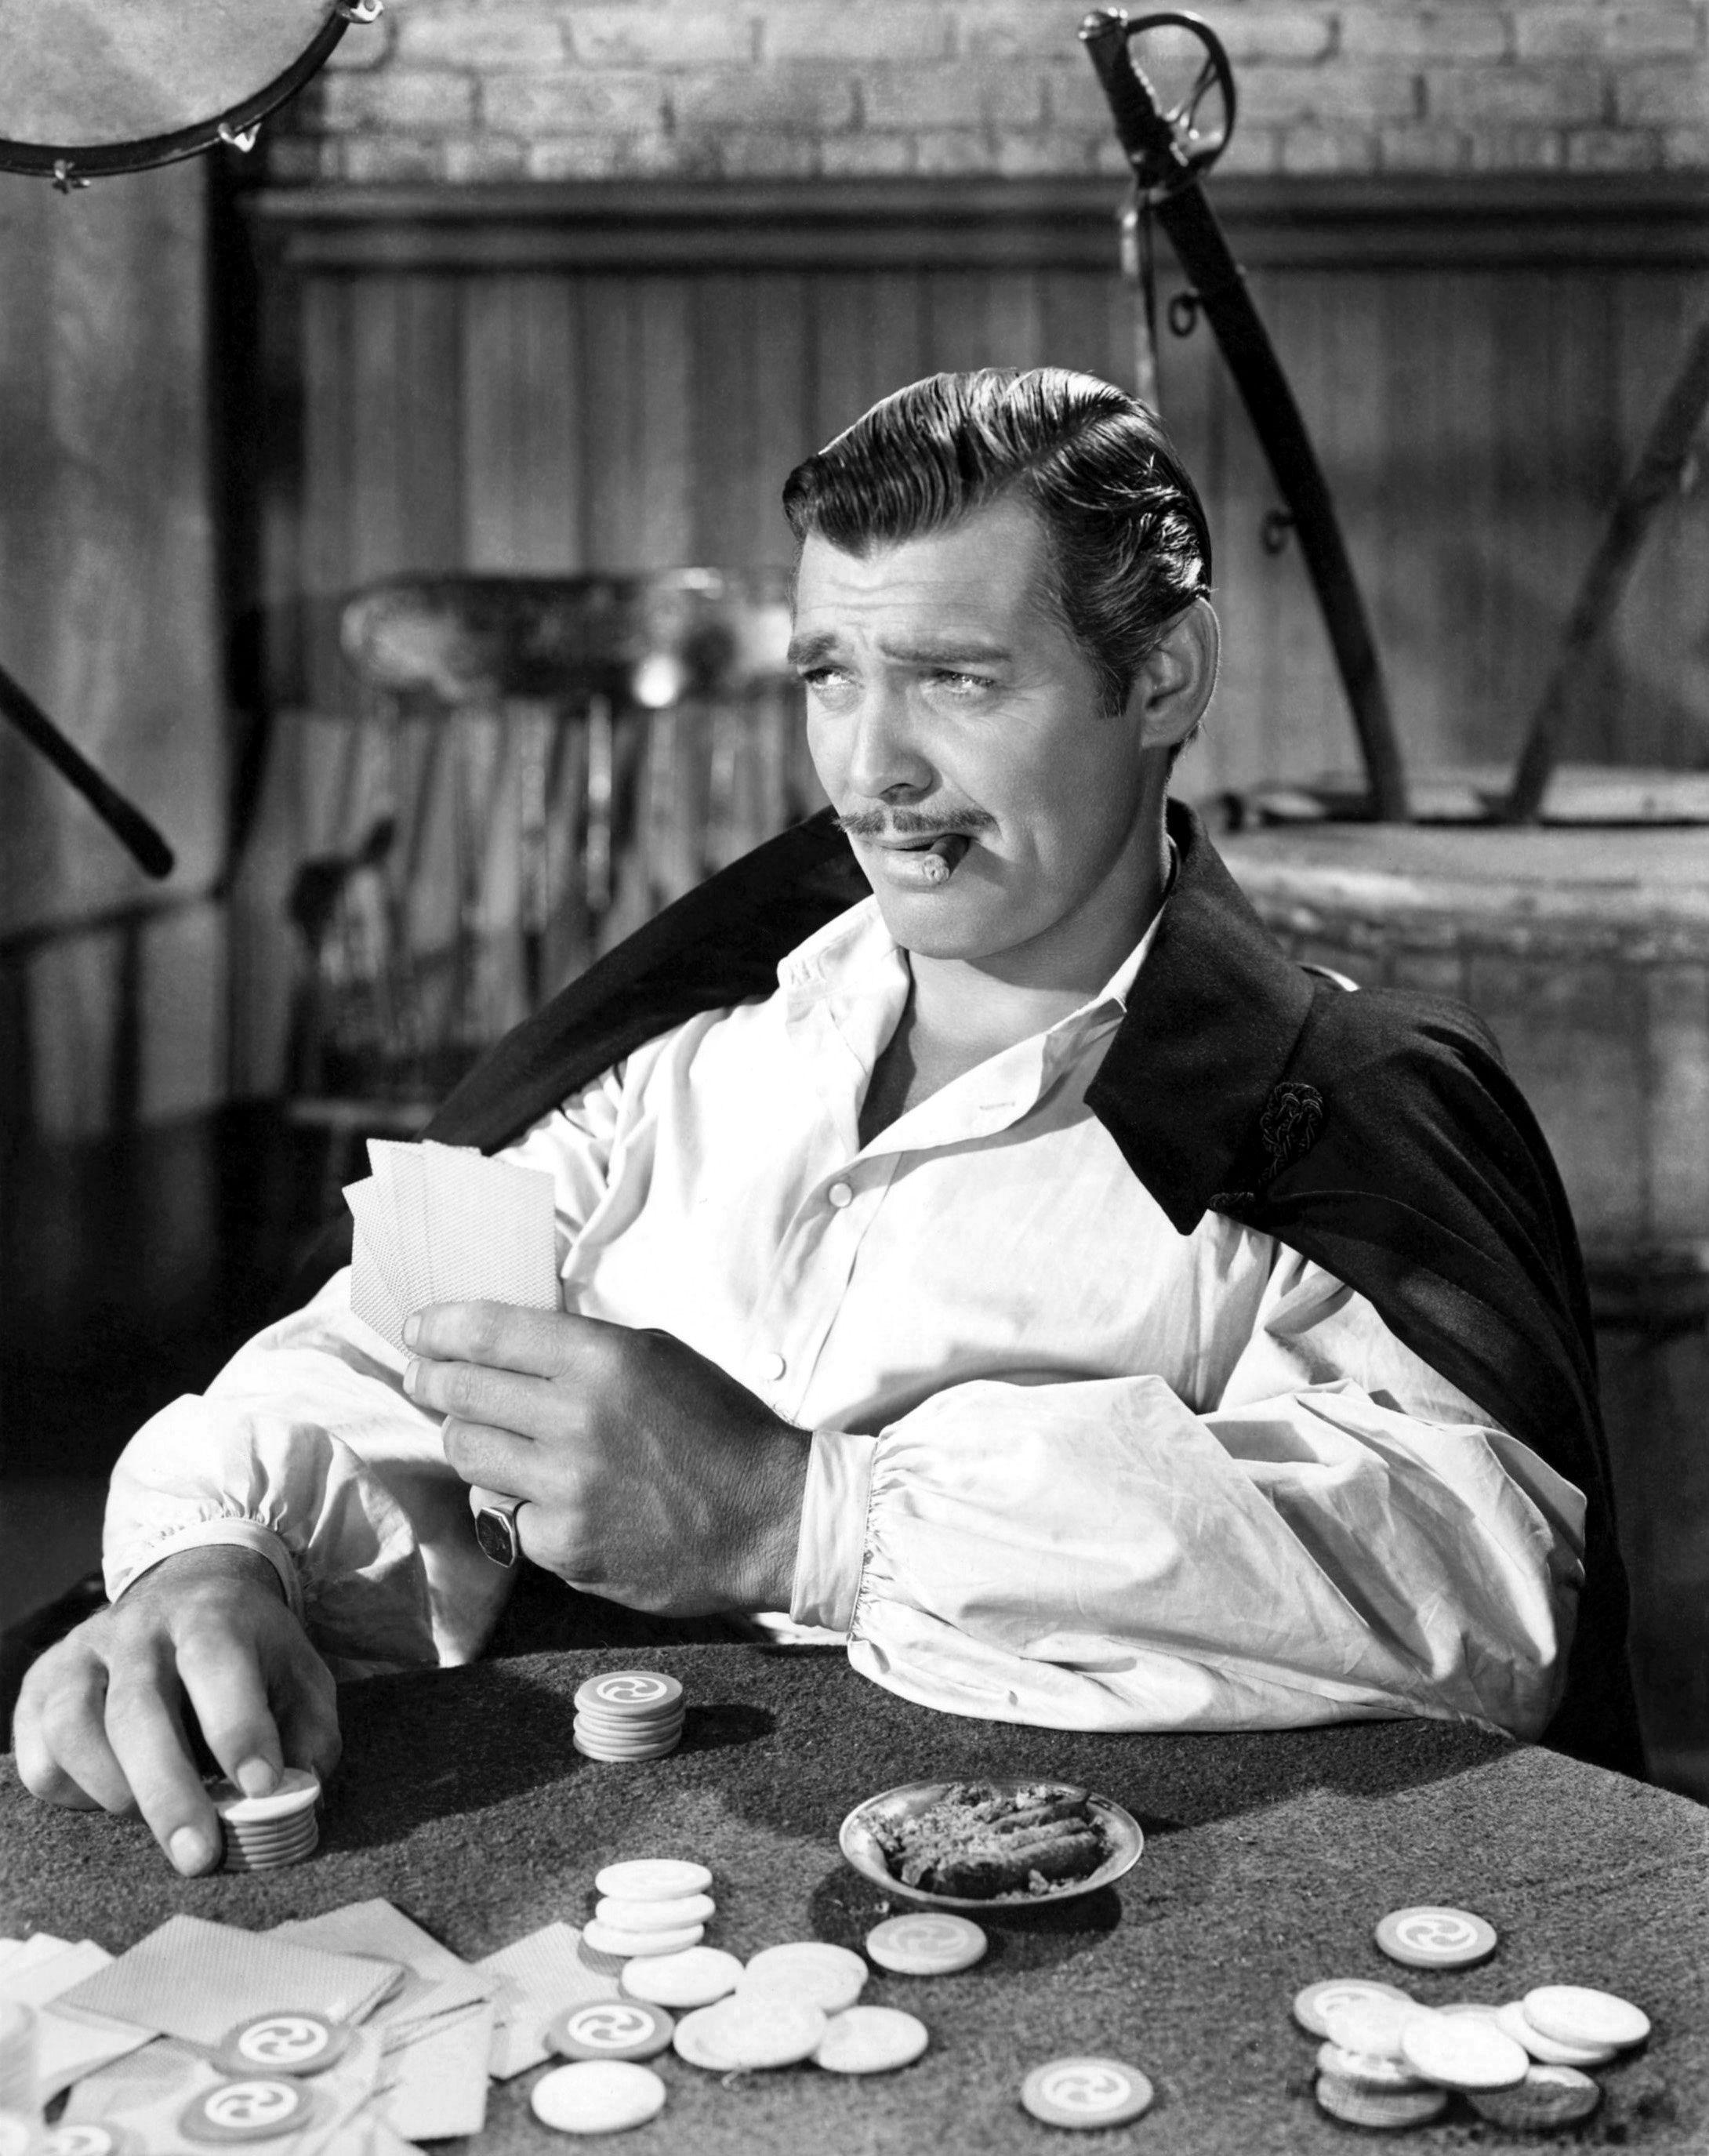 Frankly my dear, I don't give a damn. -Rhett Butler, TFTC